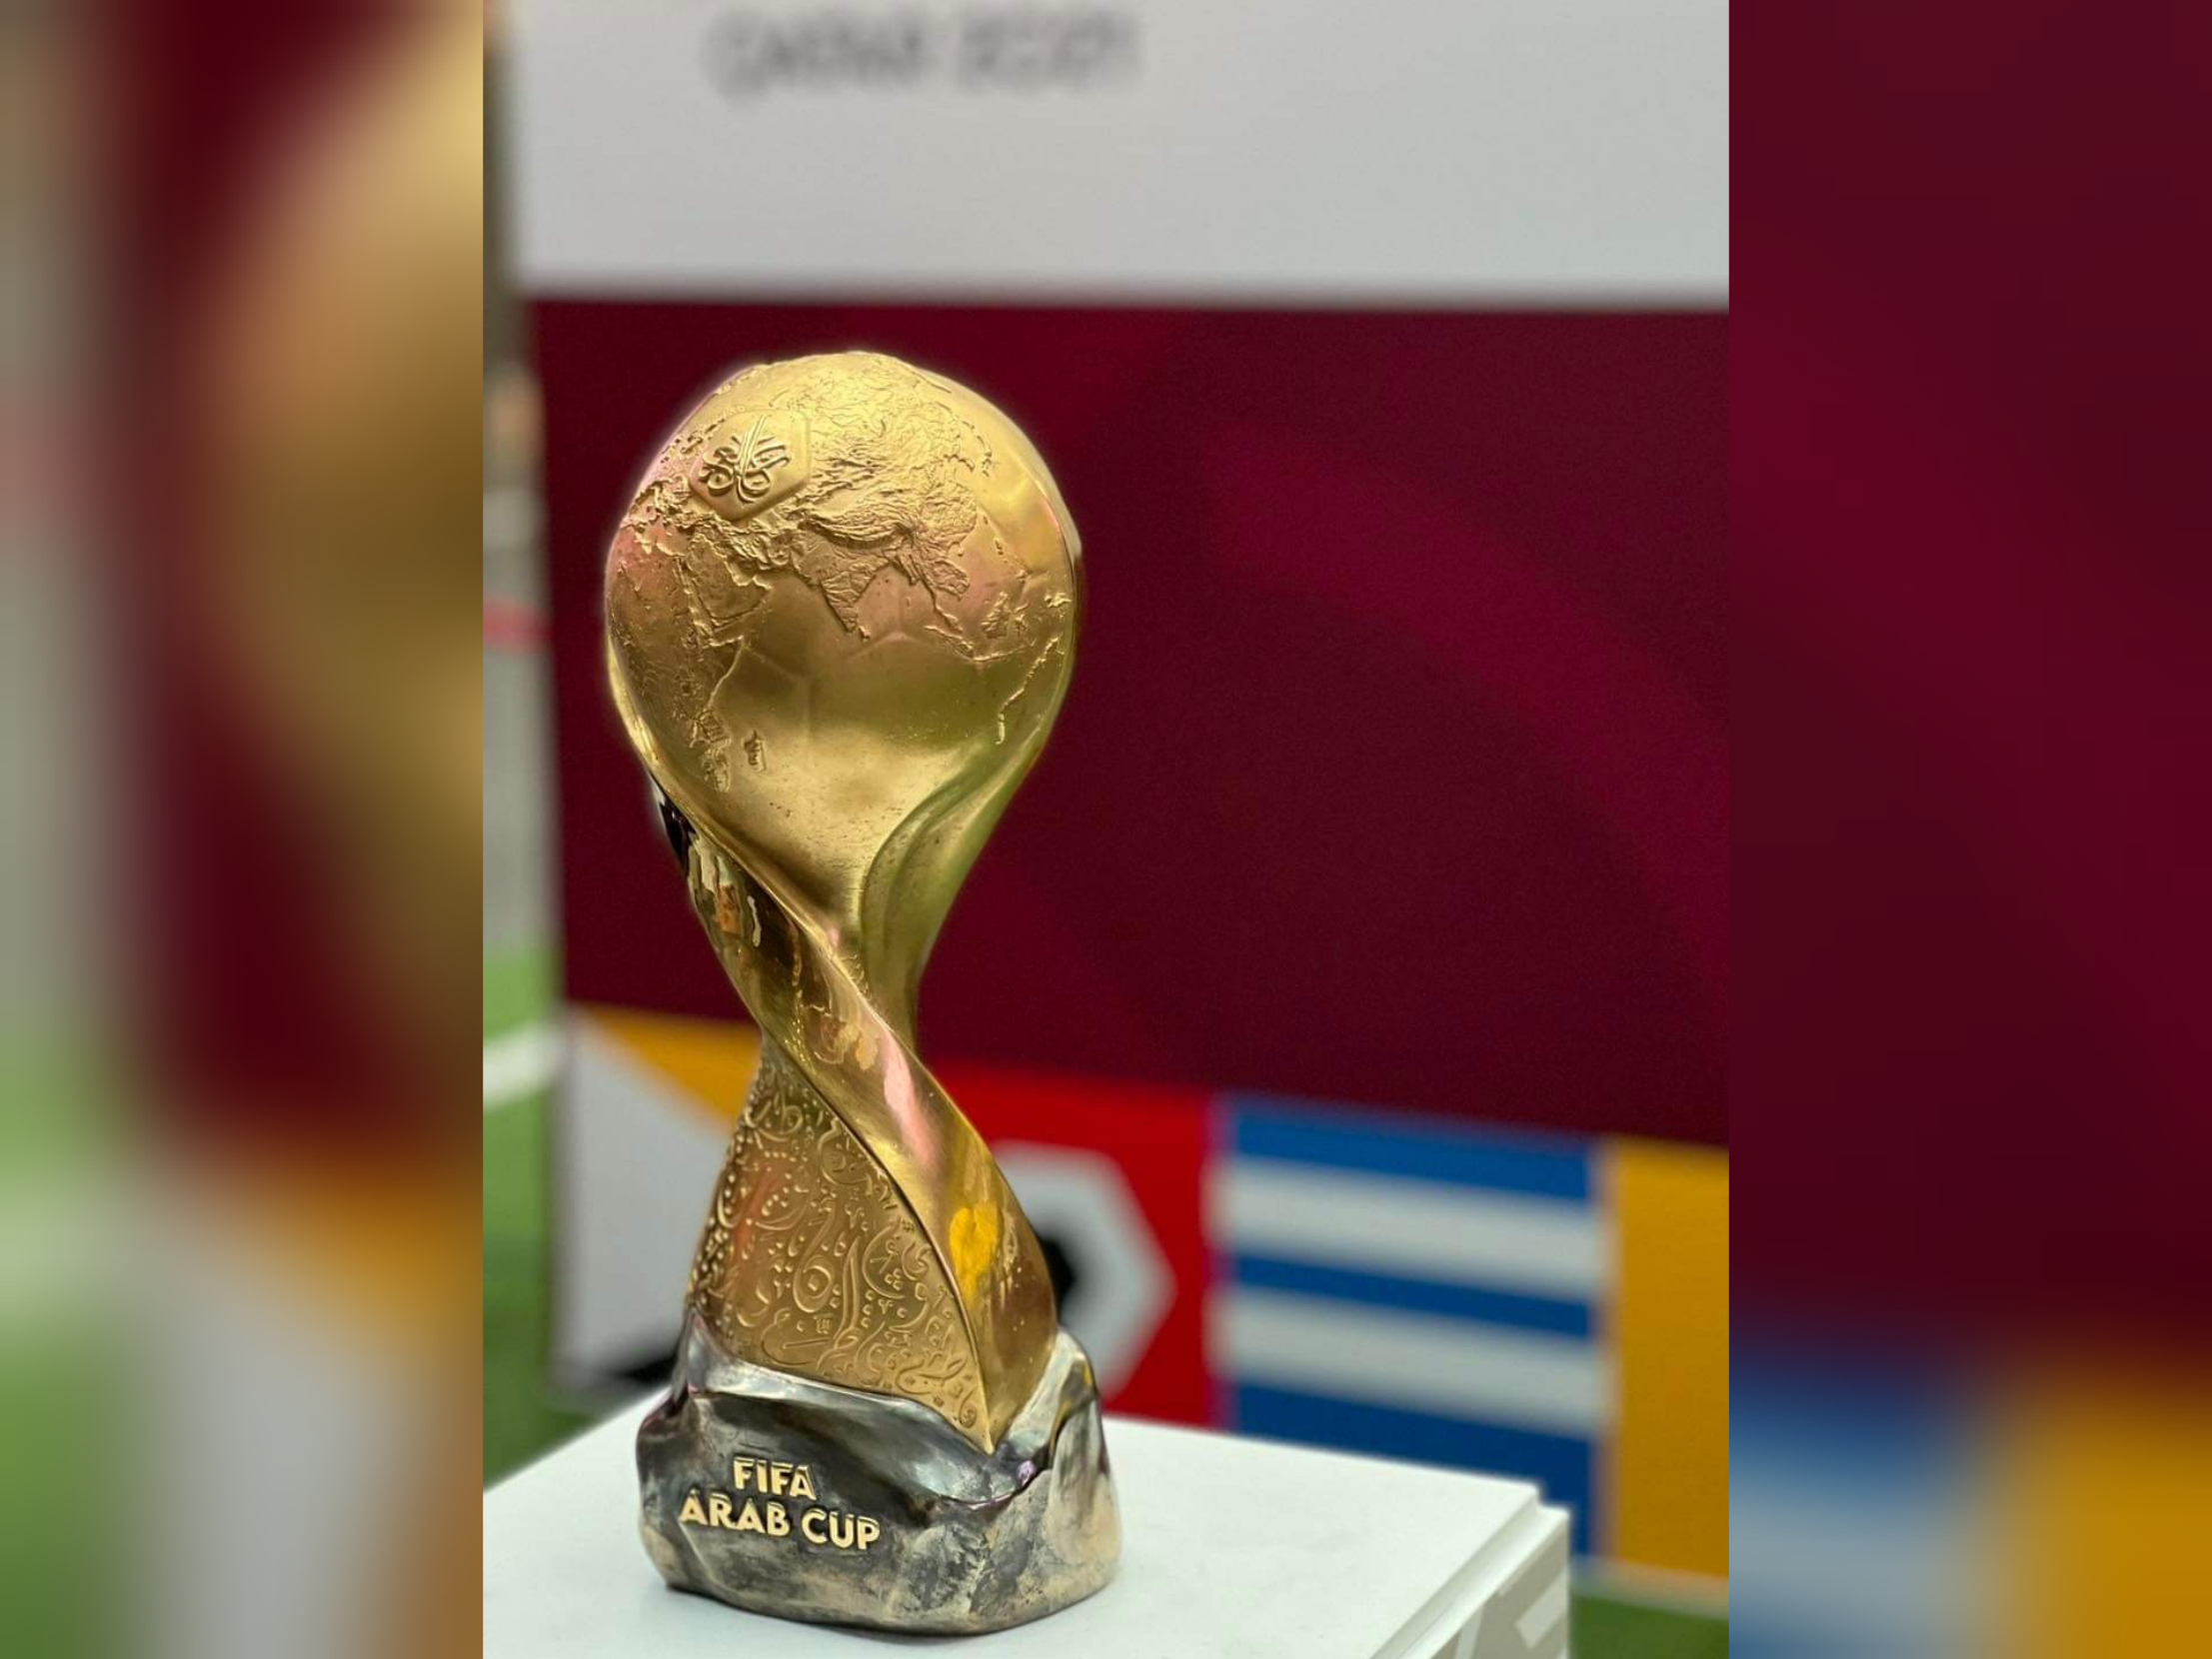 قيمة الجوائز المالية لكل المنتخبات المشاركة في كأس العرب 2021 بقطر